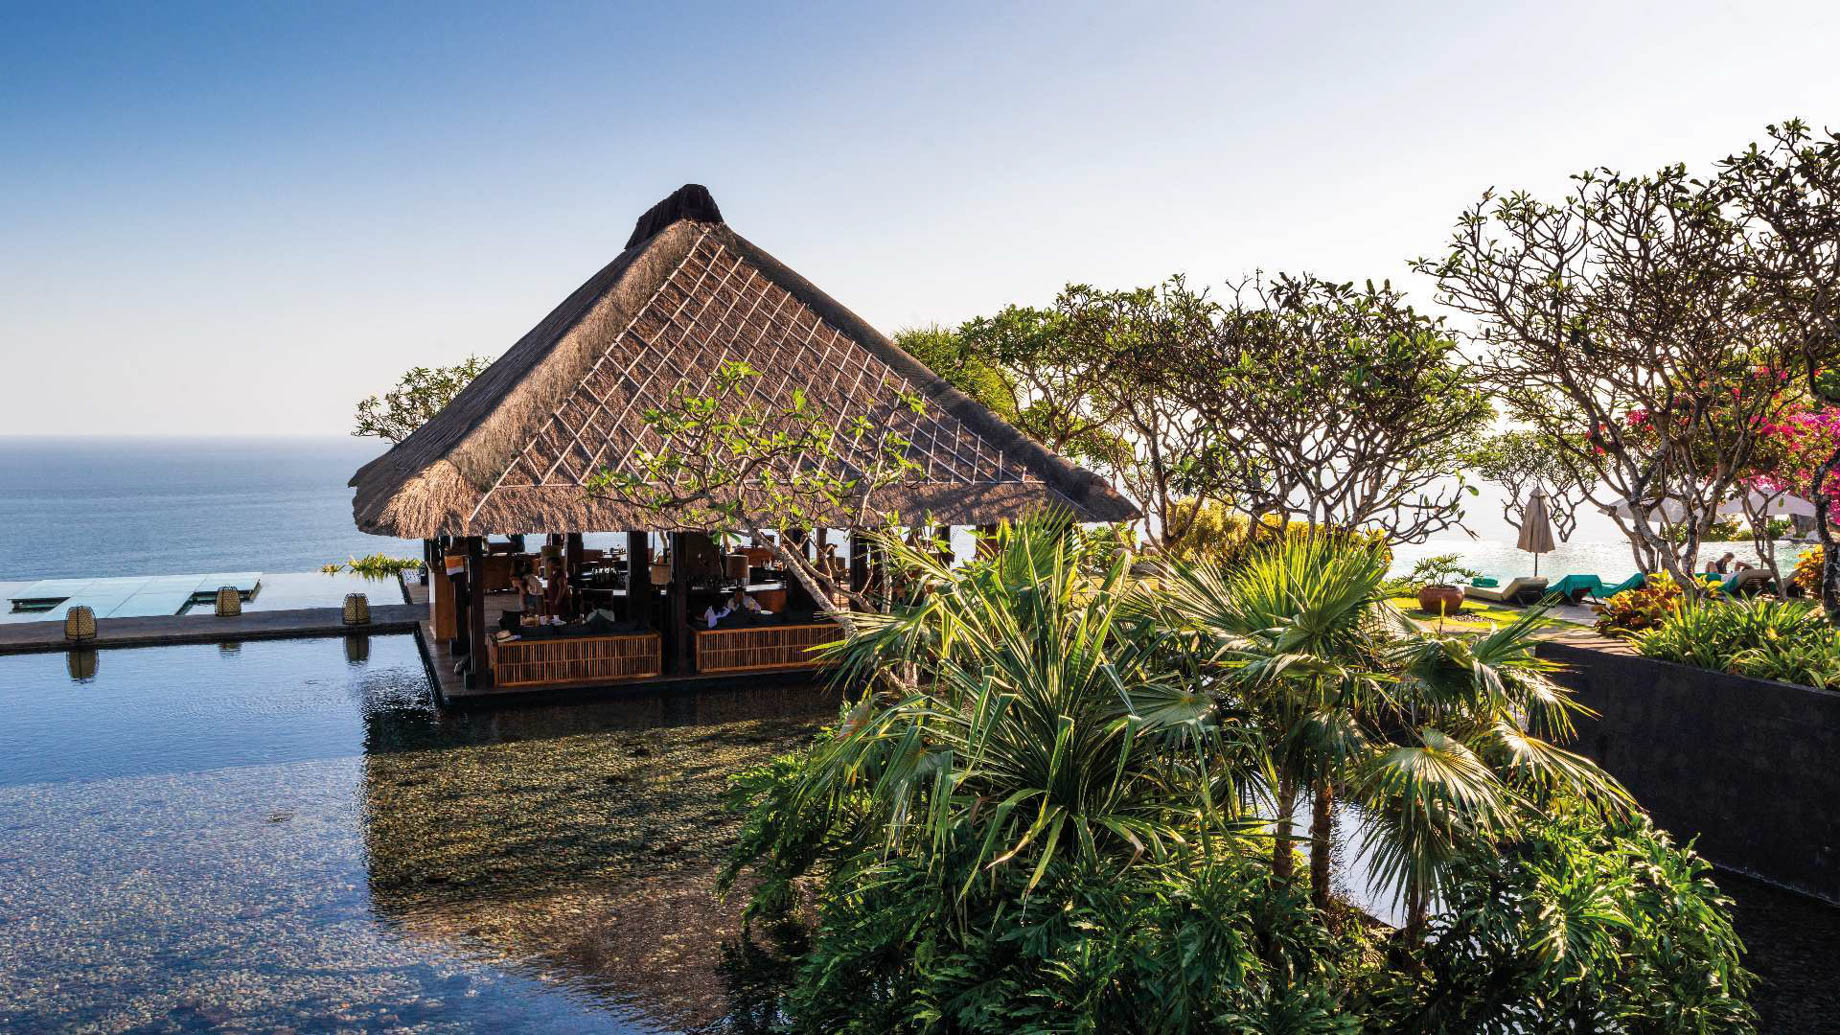 Bvlgari Resort Bali – Uluwatu, Bali, Indonesia – Bvlgari Bar Ocean View